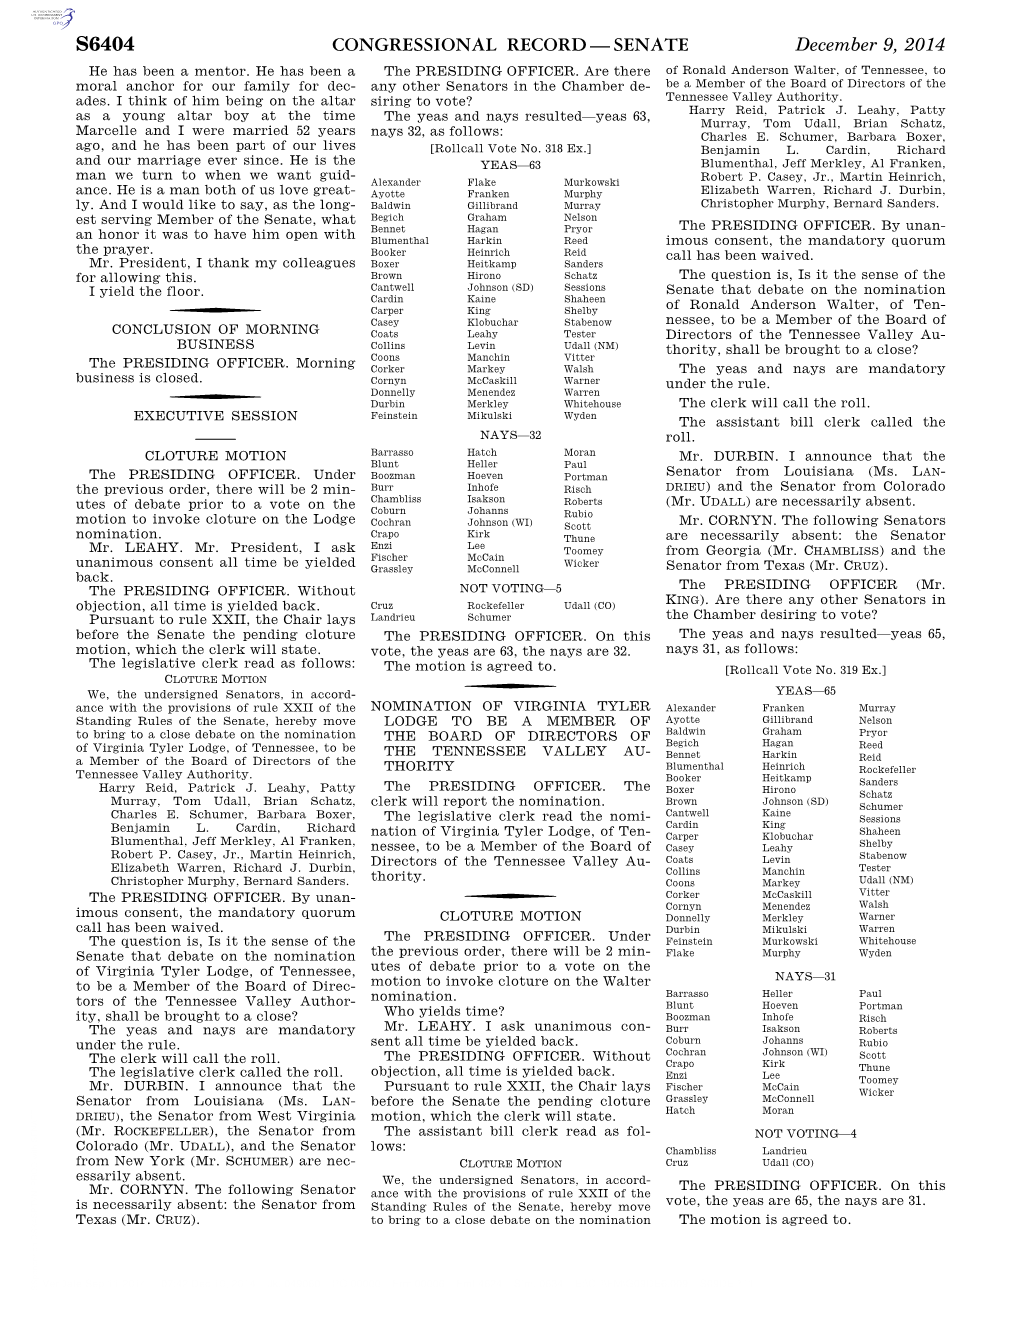 Congressional Record—Senate S6404